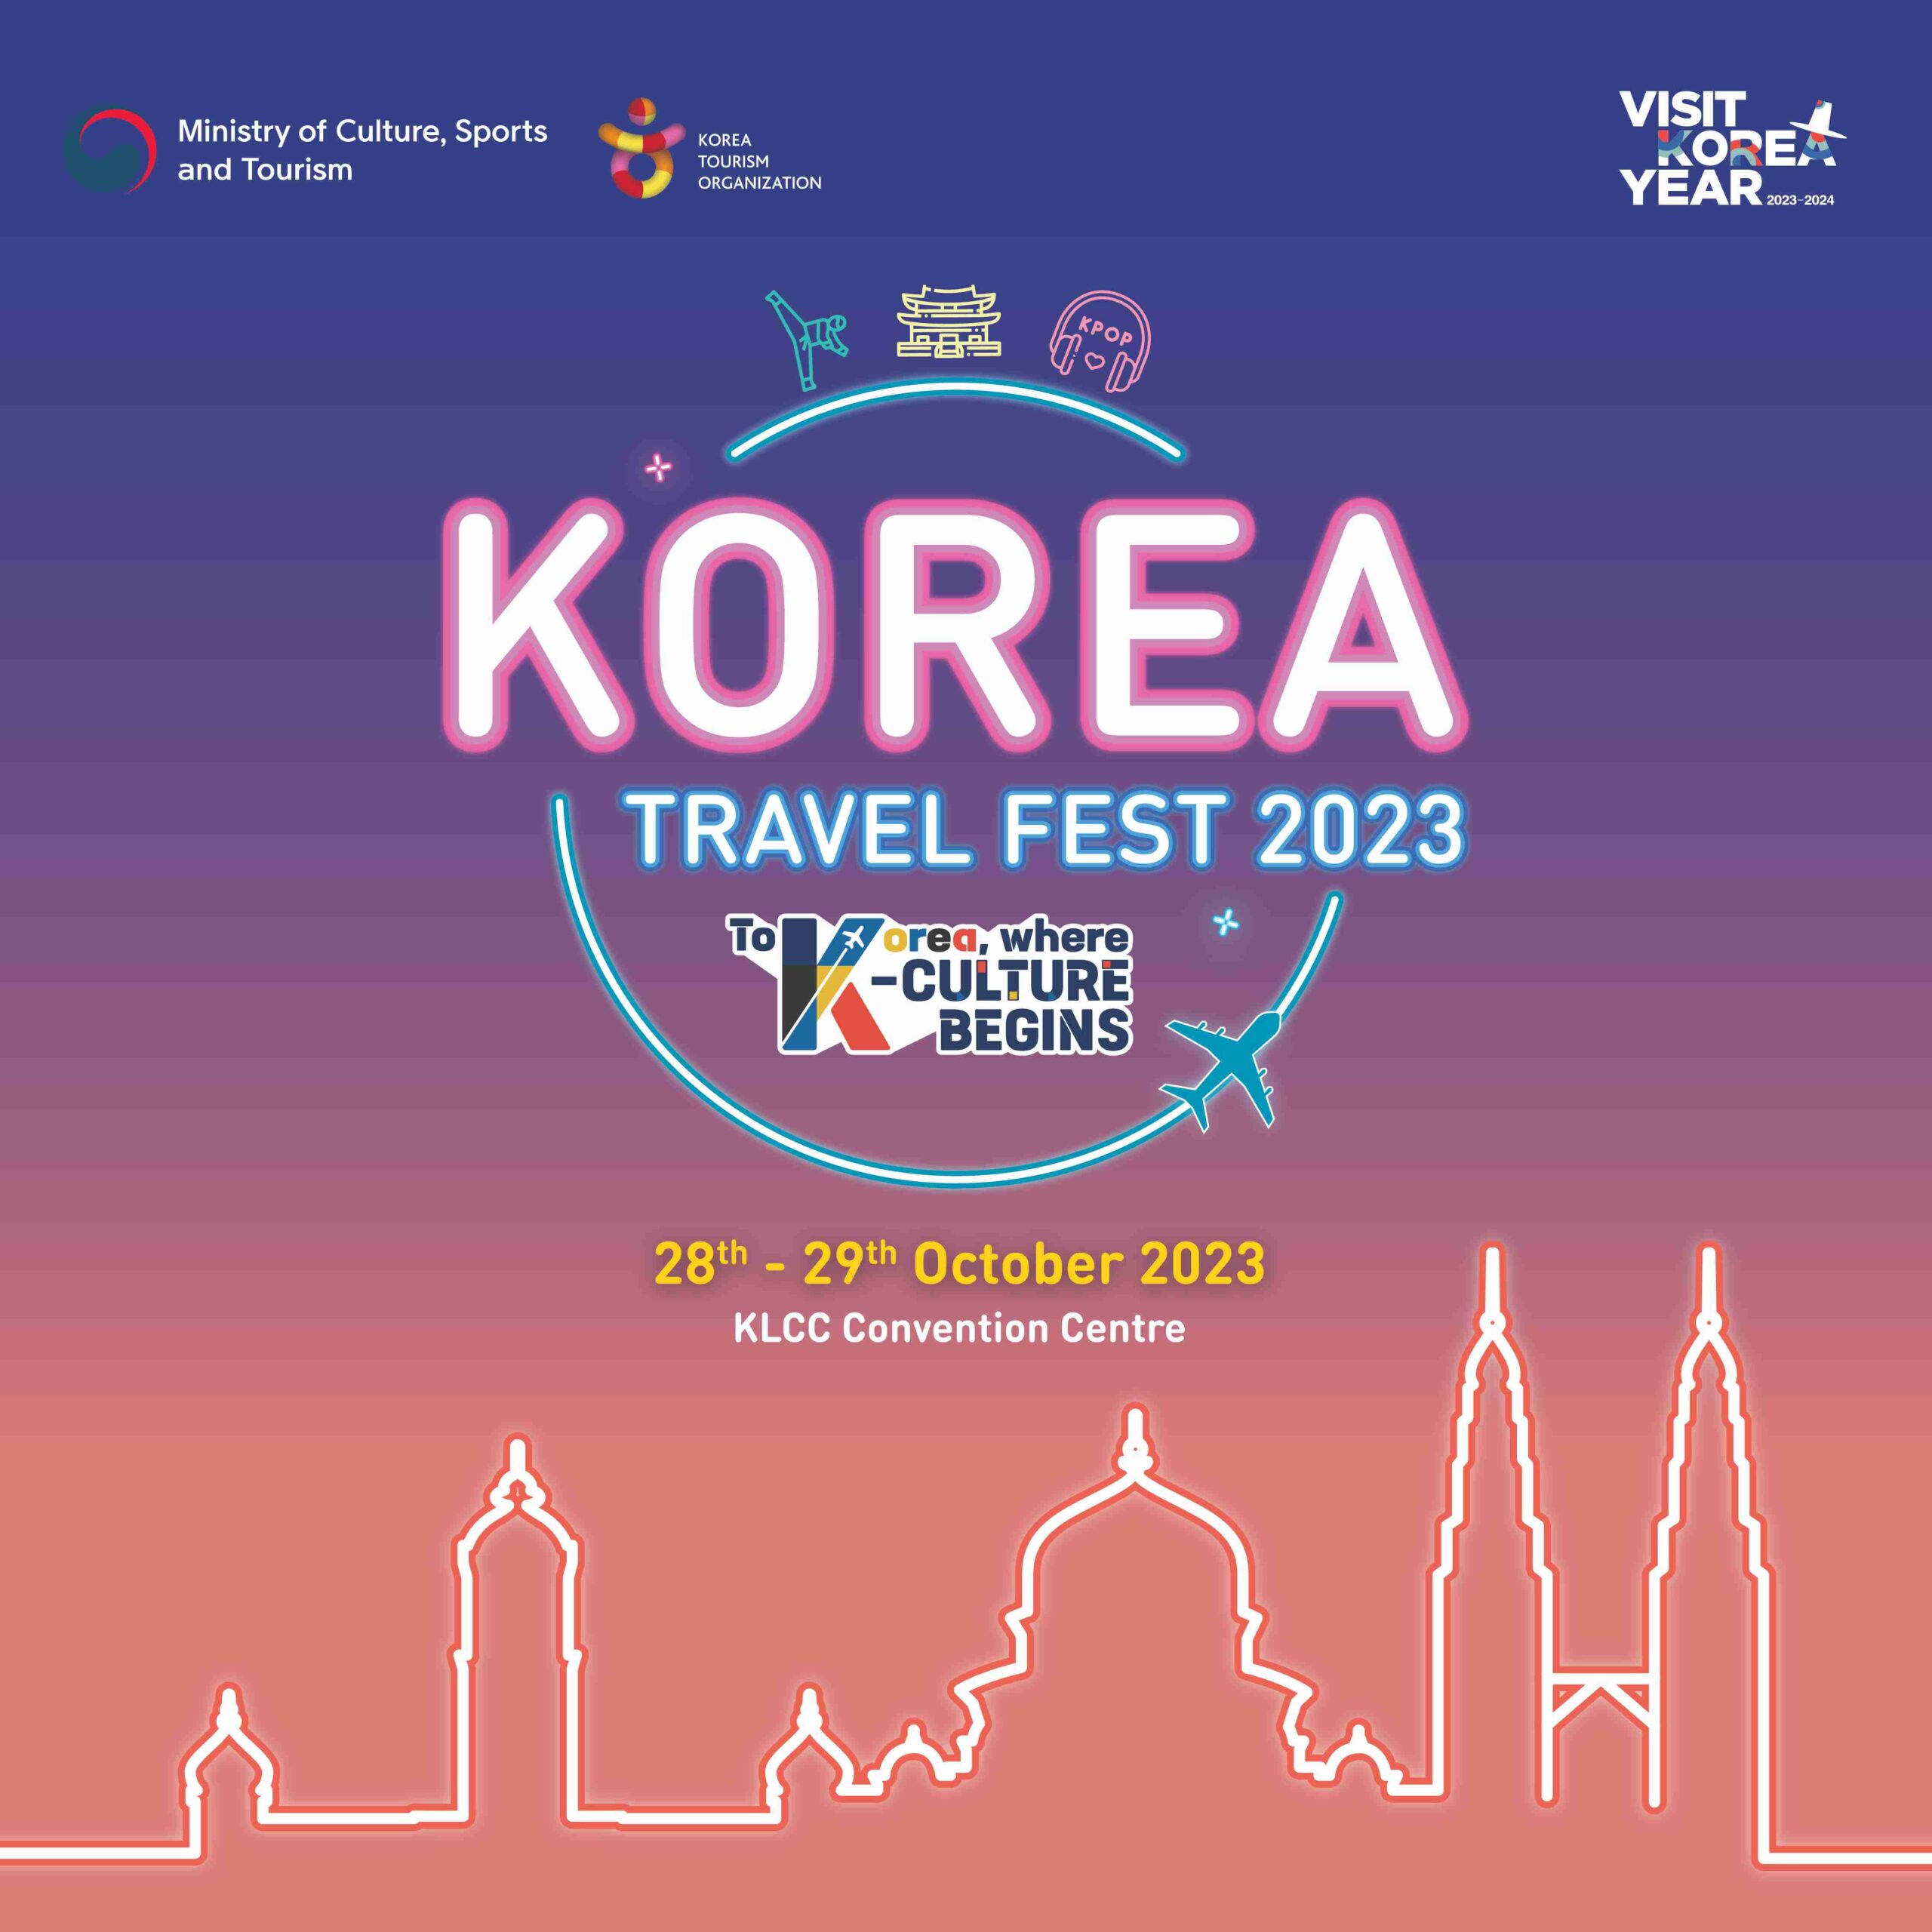 Korea Travel Fest